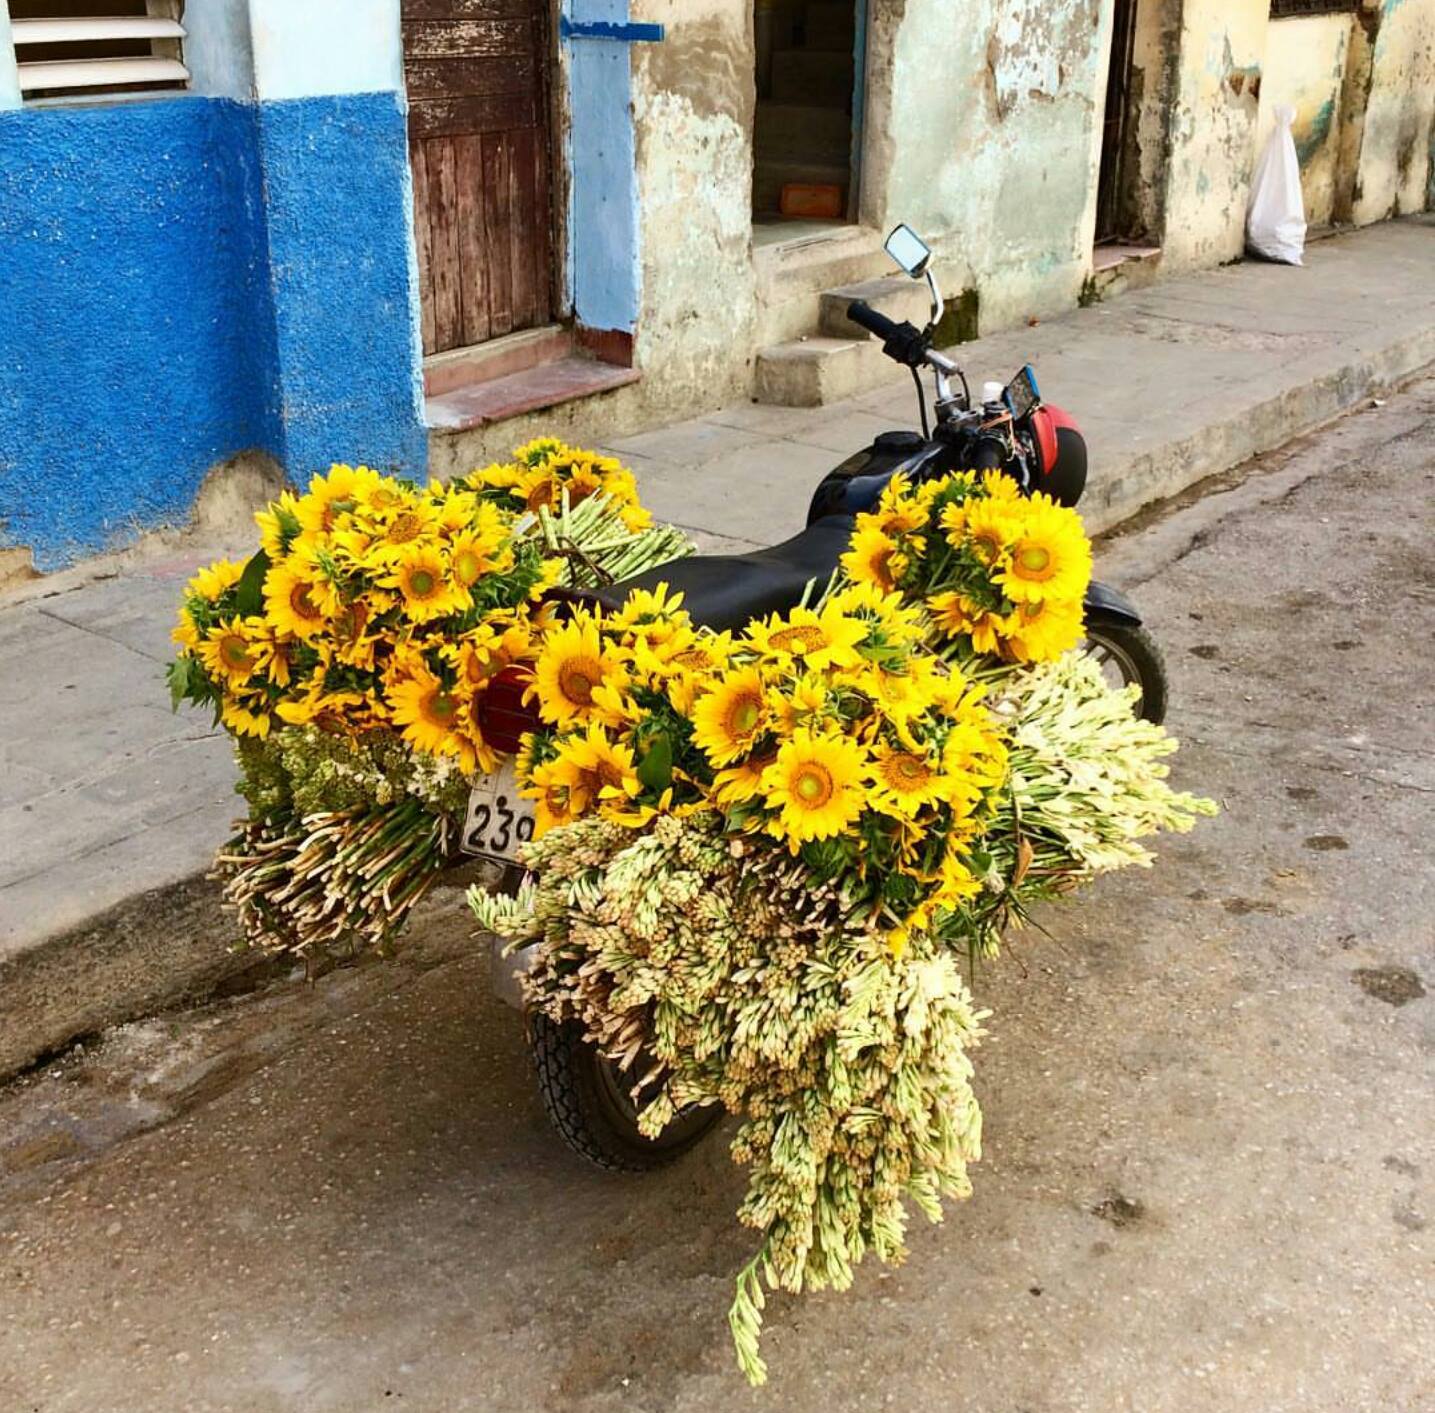 Çiçeklerin Ble Ayrı Güzel be Küba ya da Bize Öyle Geldi :) 